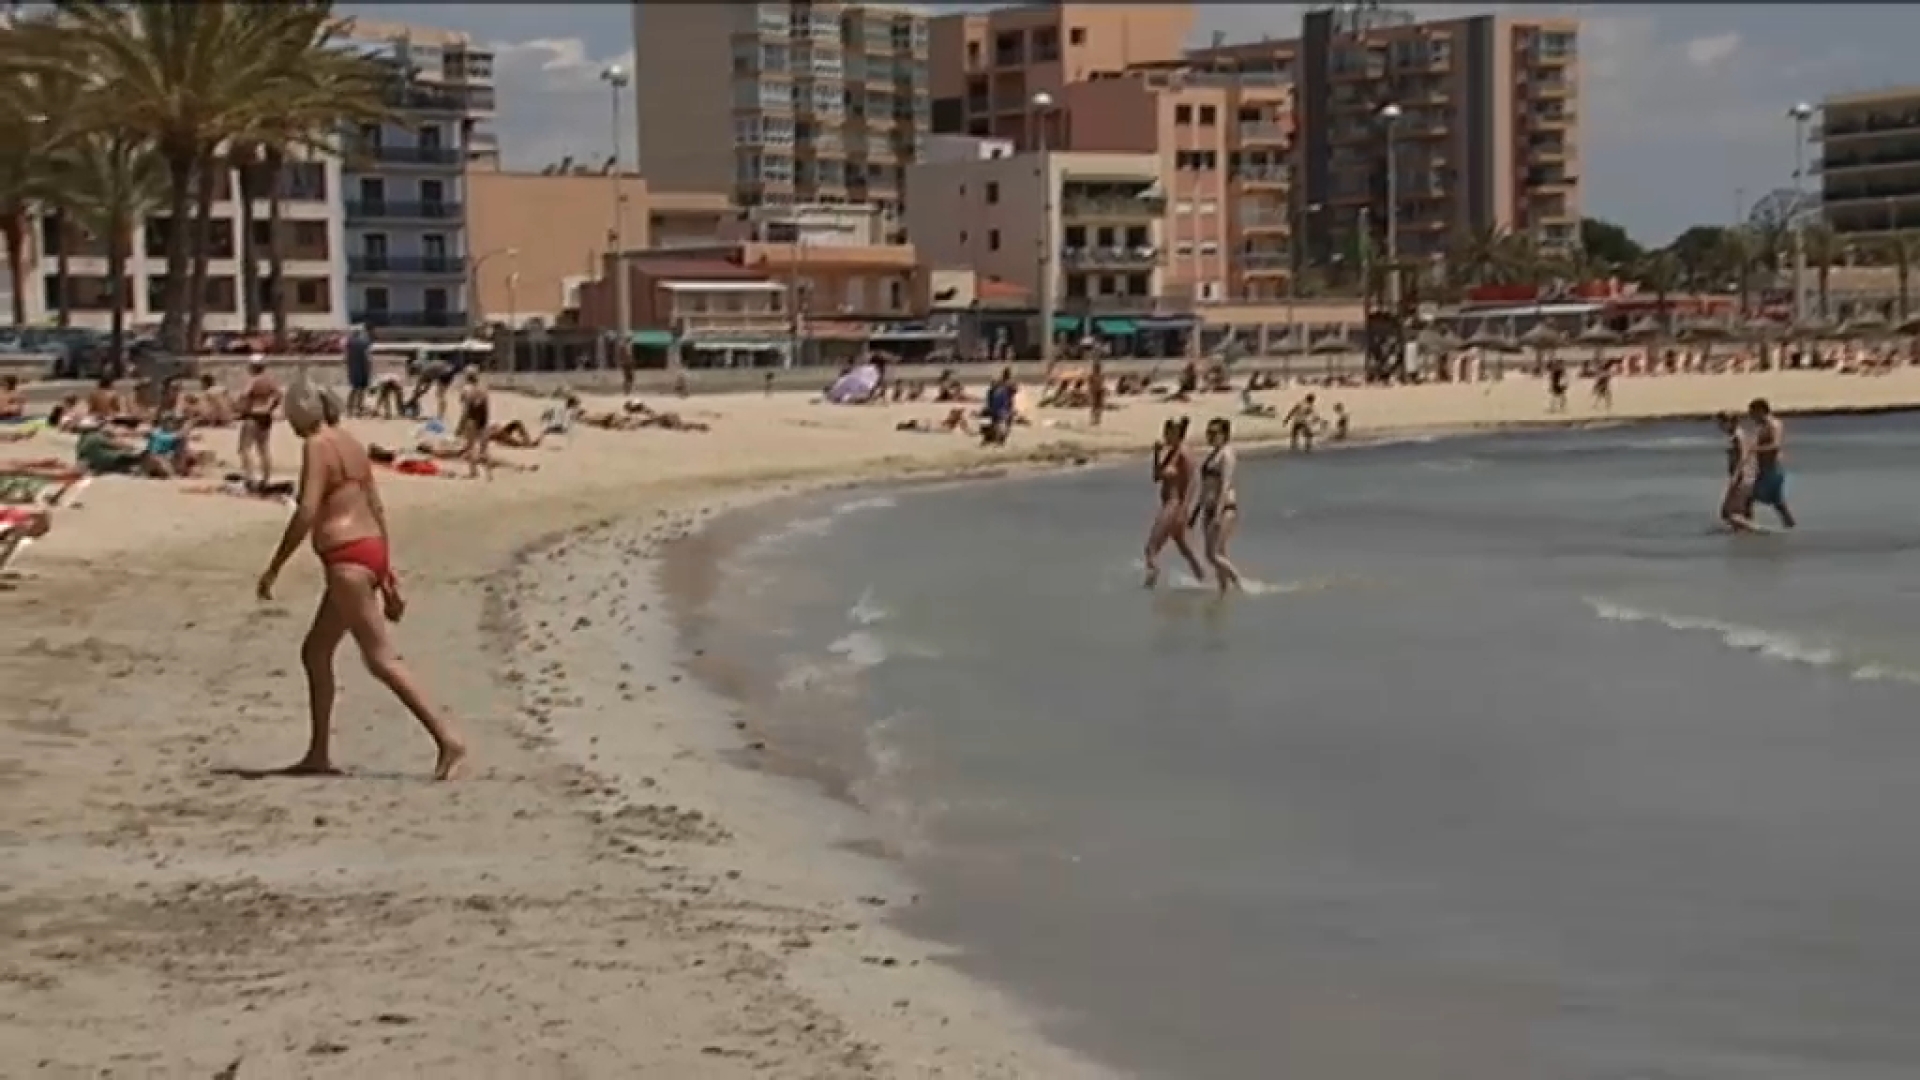 Els hotels de Mallorca tendran una ocupació del 65%25 durant la primera quinzena d’agost